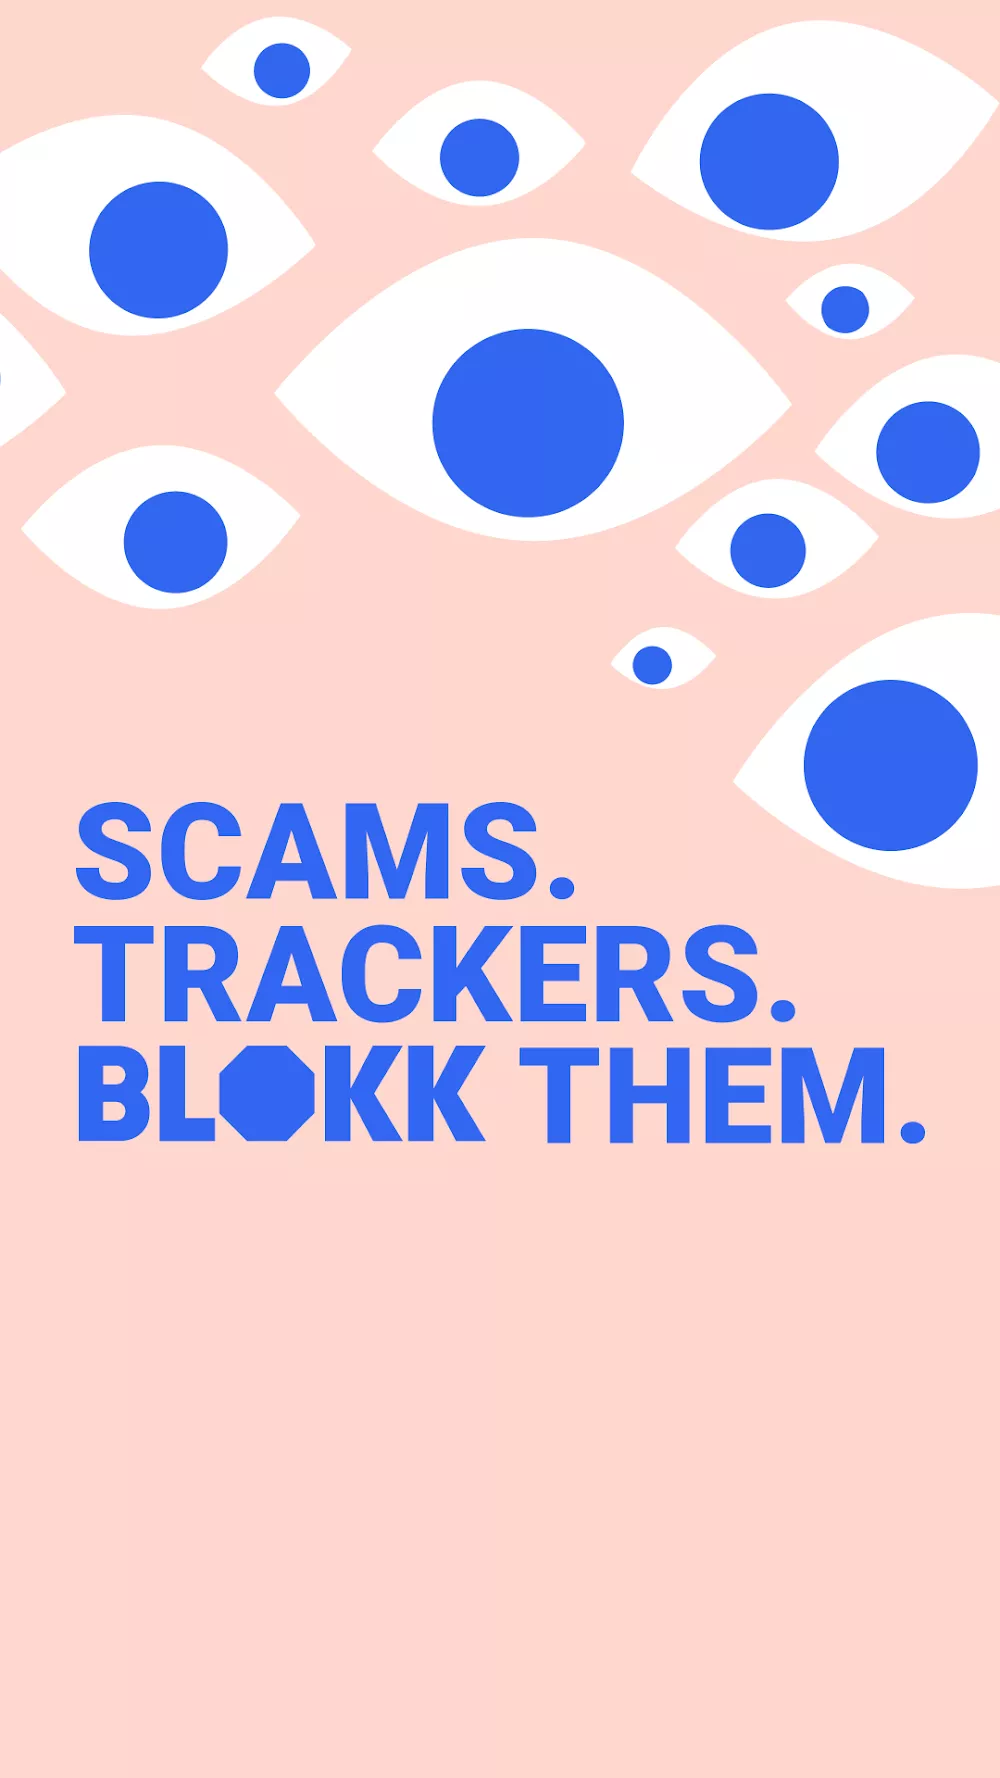 BLOKK: Stop Tracking Me